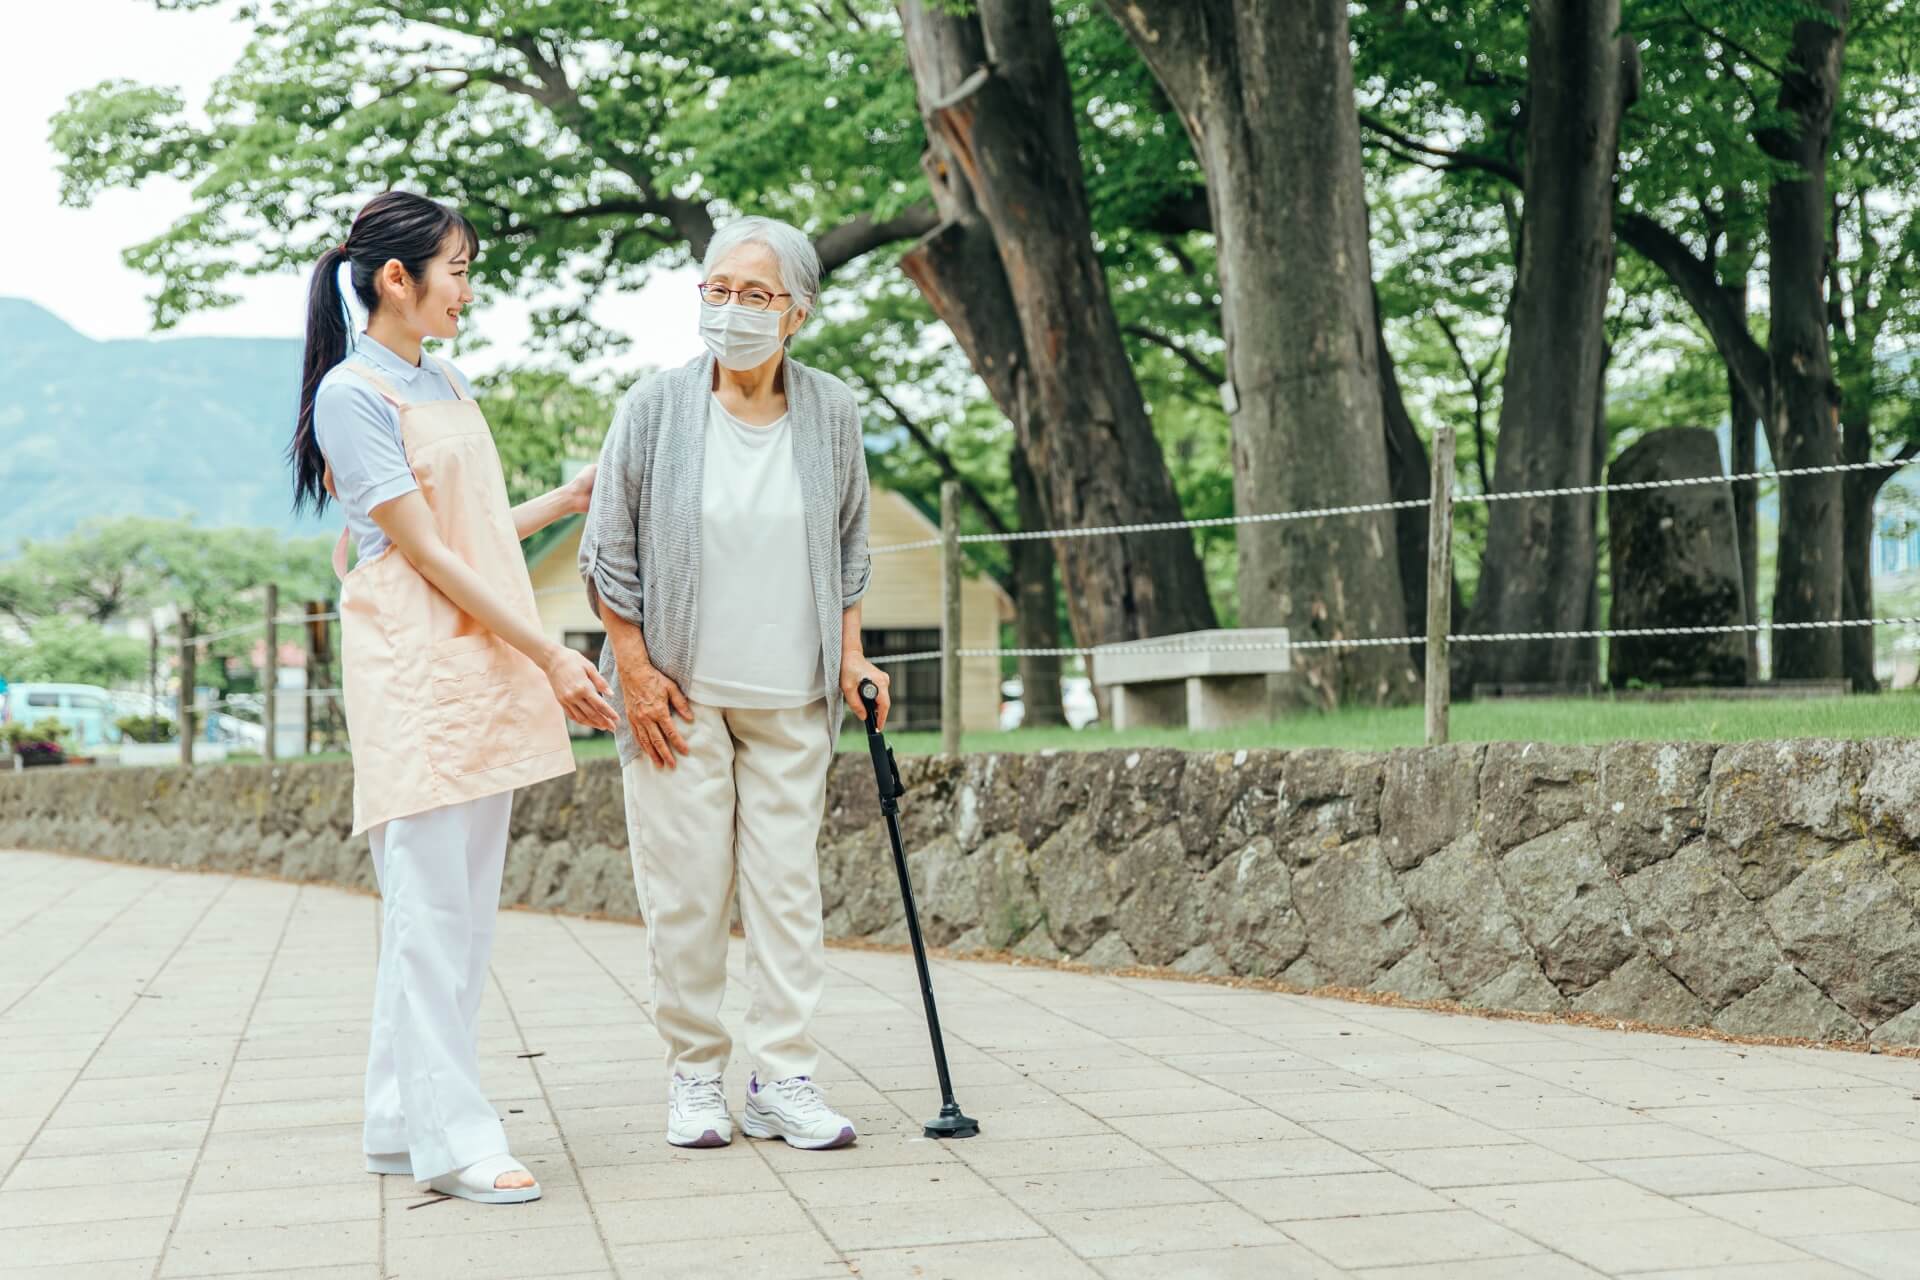 女性介護スタッフと杖をついたご高齢女性が、共に外で散歩を楽しんでいる写真